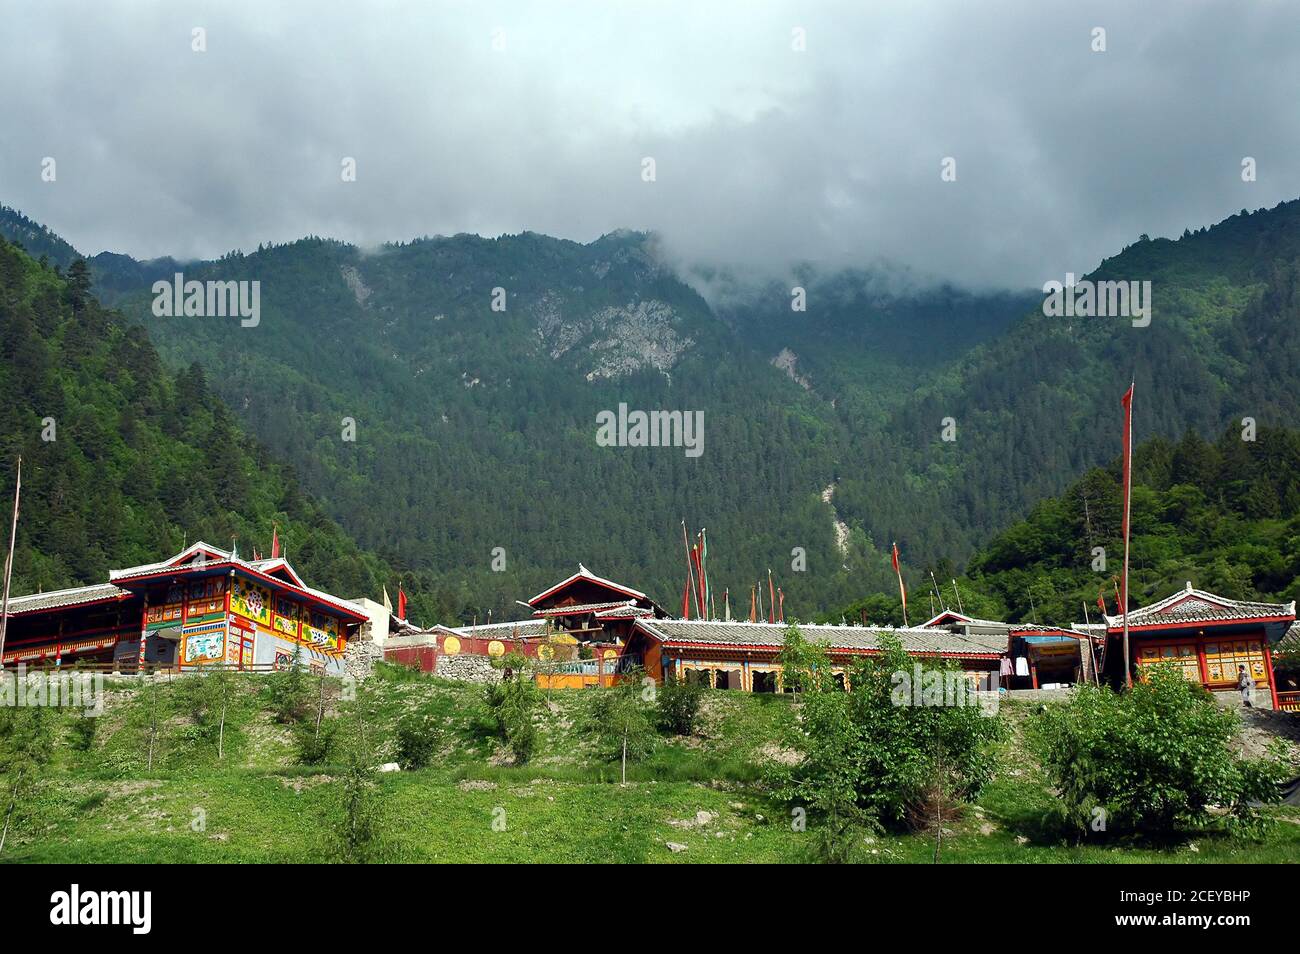 Juizhaigou (valle de nueve aldeas) en Sichuan, China. Un pueblo con casas de estilo tibetano. Foto de stock